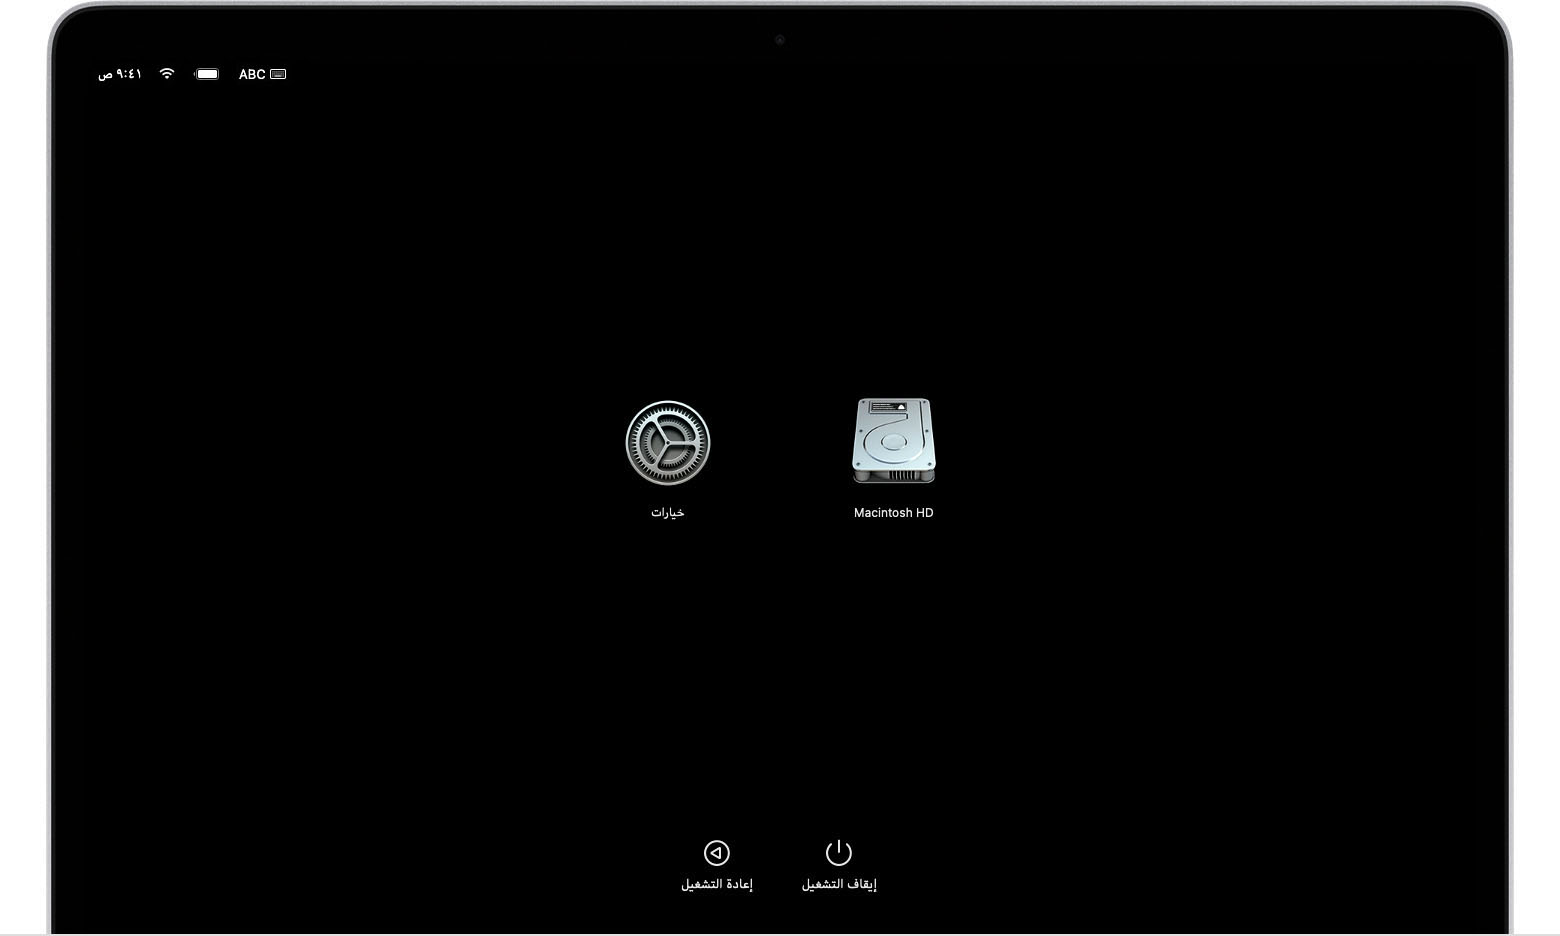 شاشة خيارات بدء تشغيل macOS تعرض أيقونتي Macintosh HD و